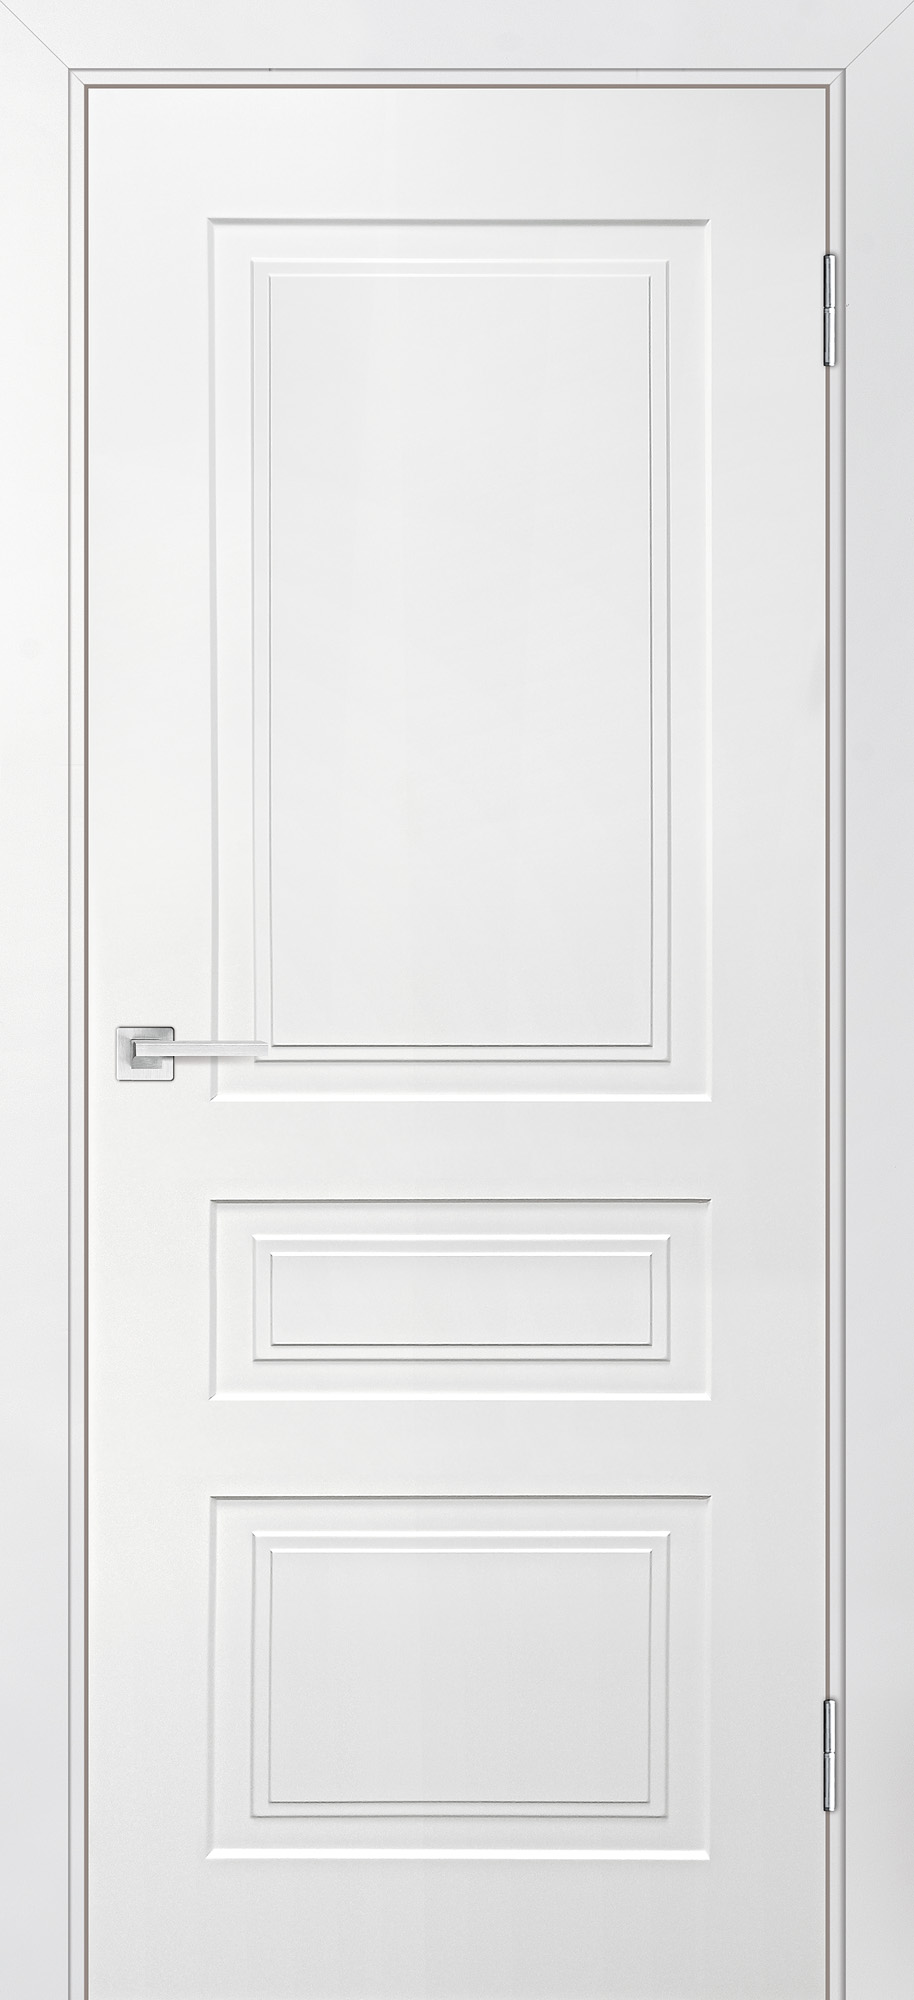 Двери крашеные (Эмаль) ТЕКОНА Смальта-Лайн 05 глухое Белый ral 9003 размер 200 х 80 см. артикул F0000093243